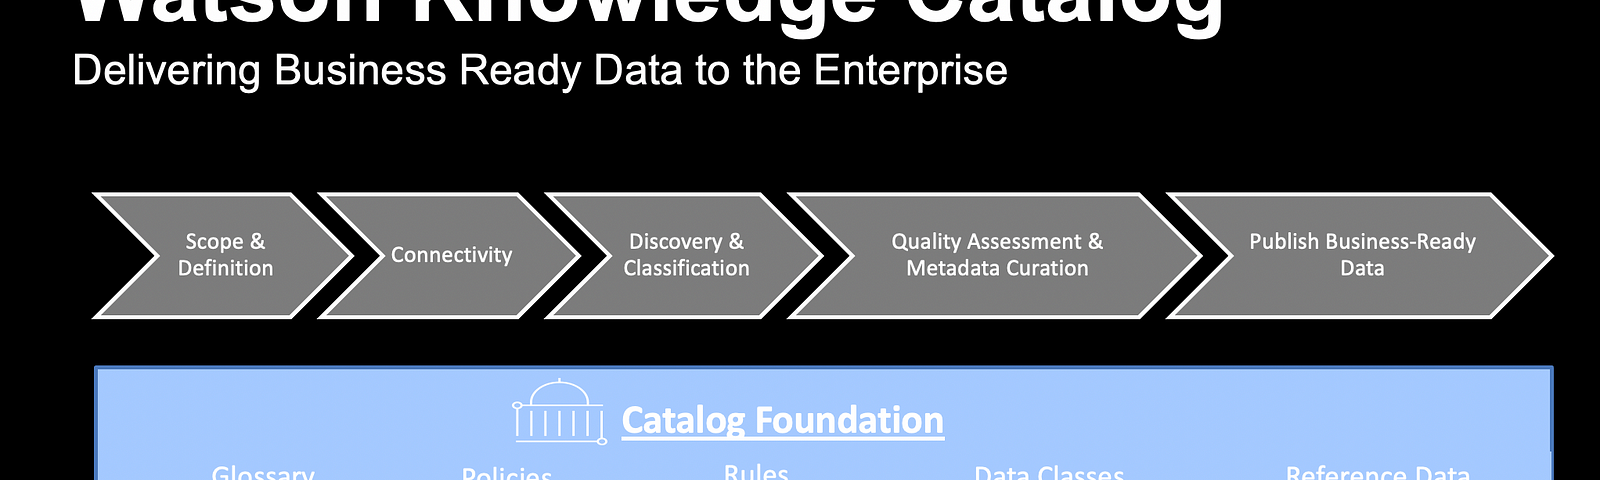 Watson Knowledge Catalog Process